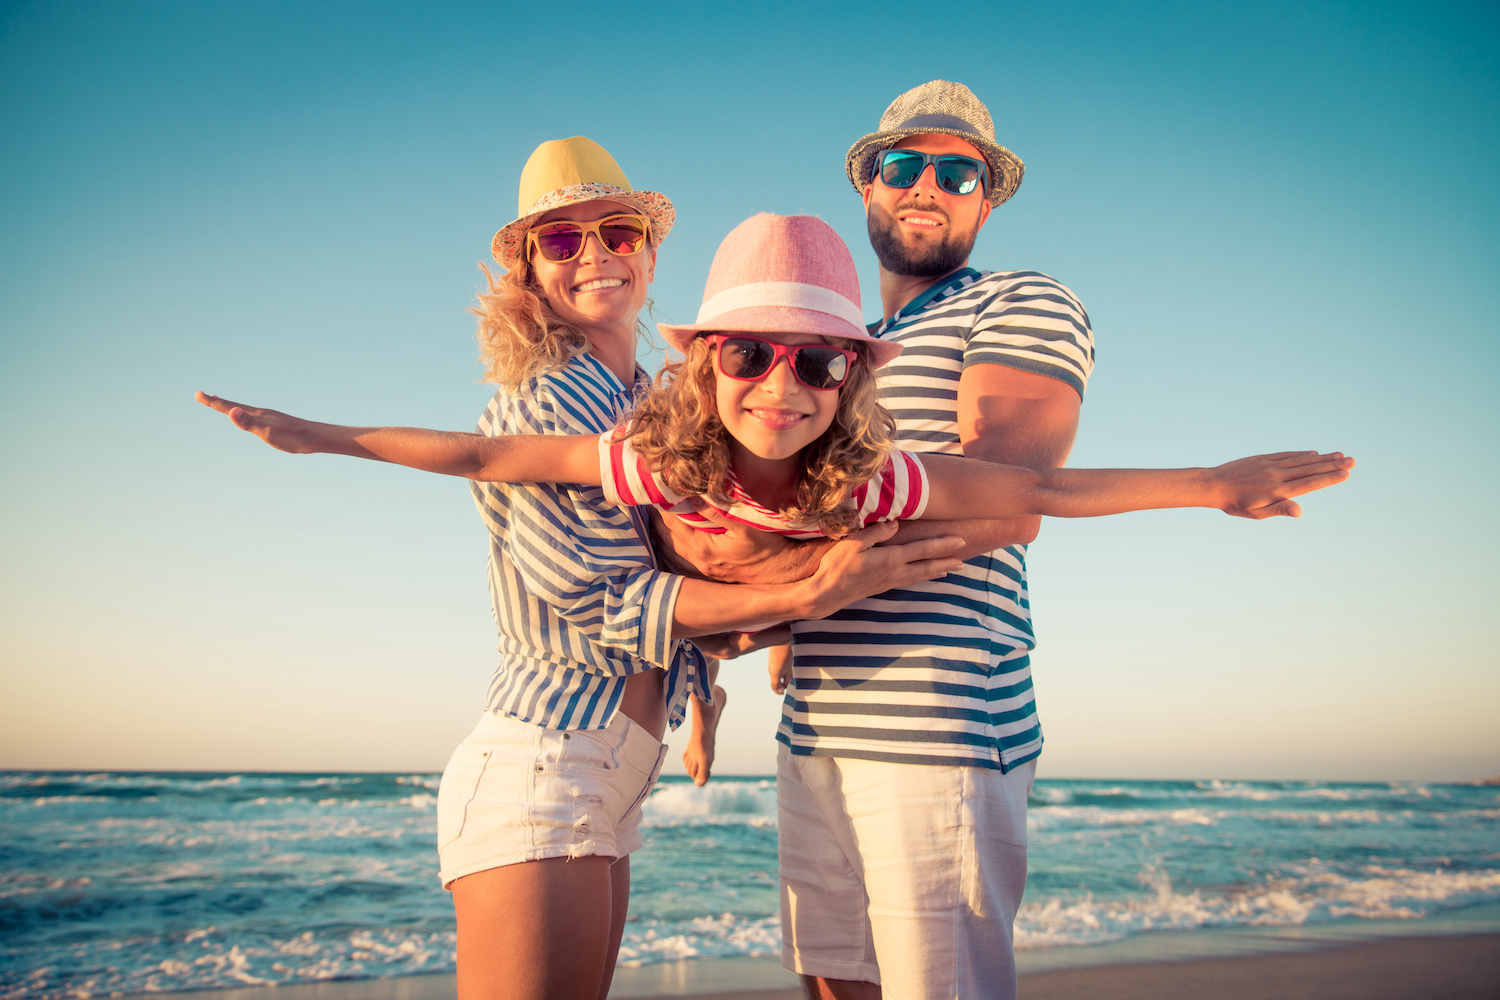 Die Corona-Infektionszahlen sinken in ganz Europa – das sind beste Vorraussetzungen für einen entspannten Sommerurlaub 2021. Foto: Adobe Stock